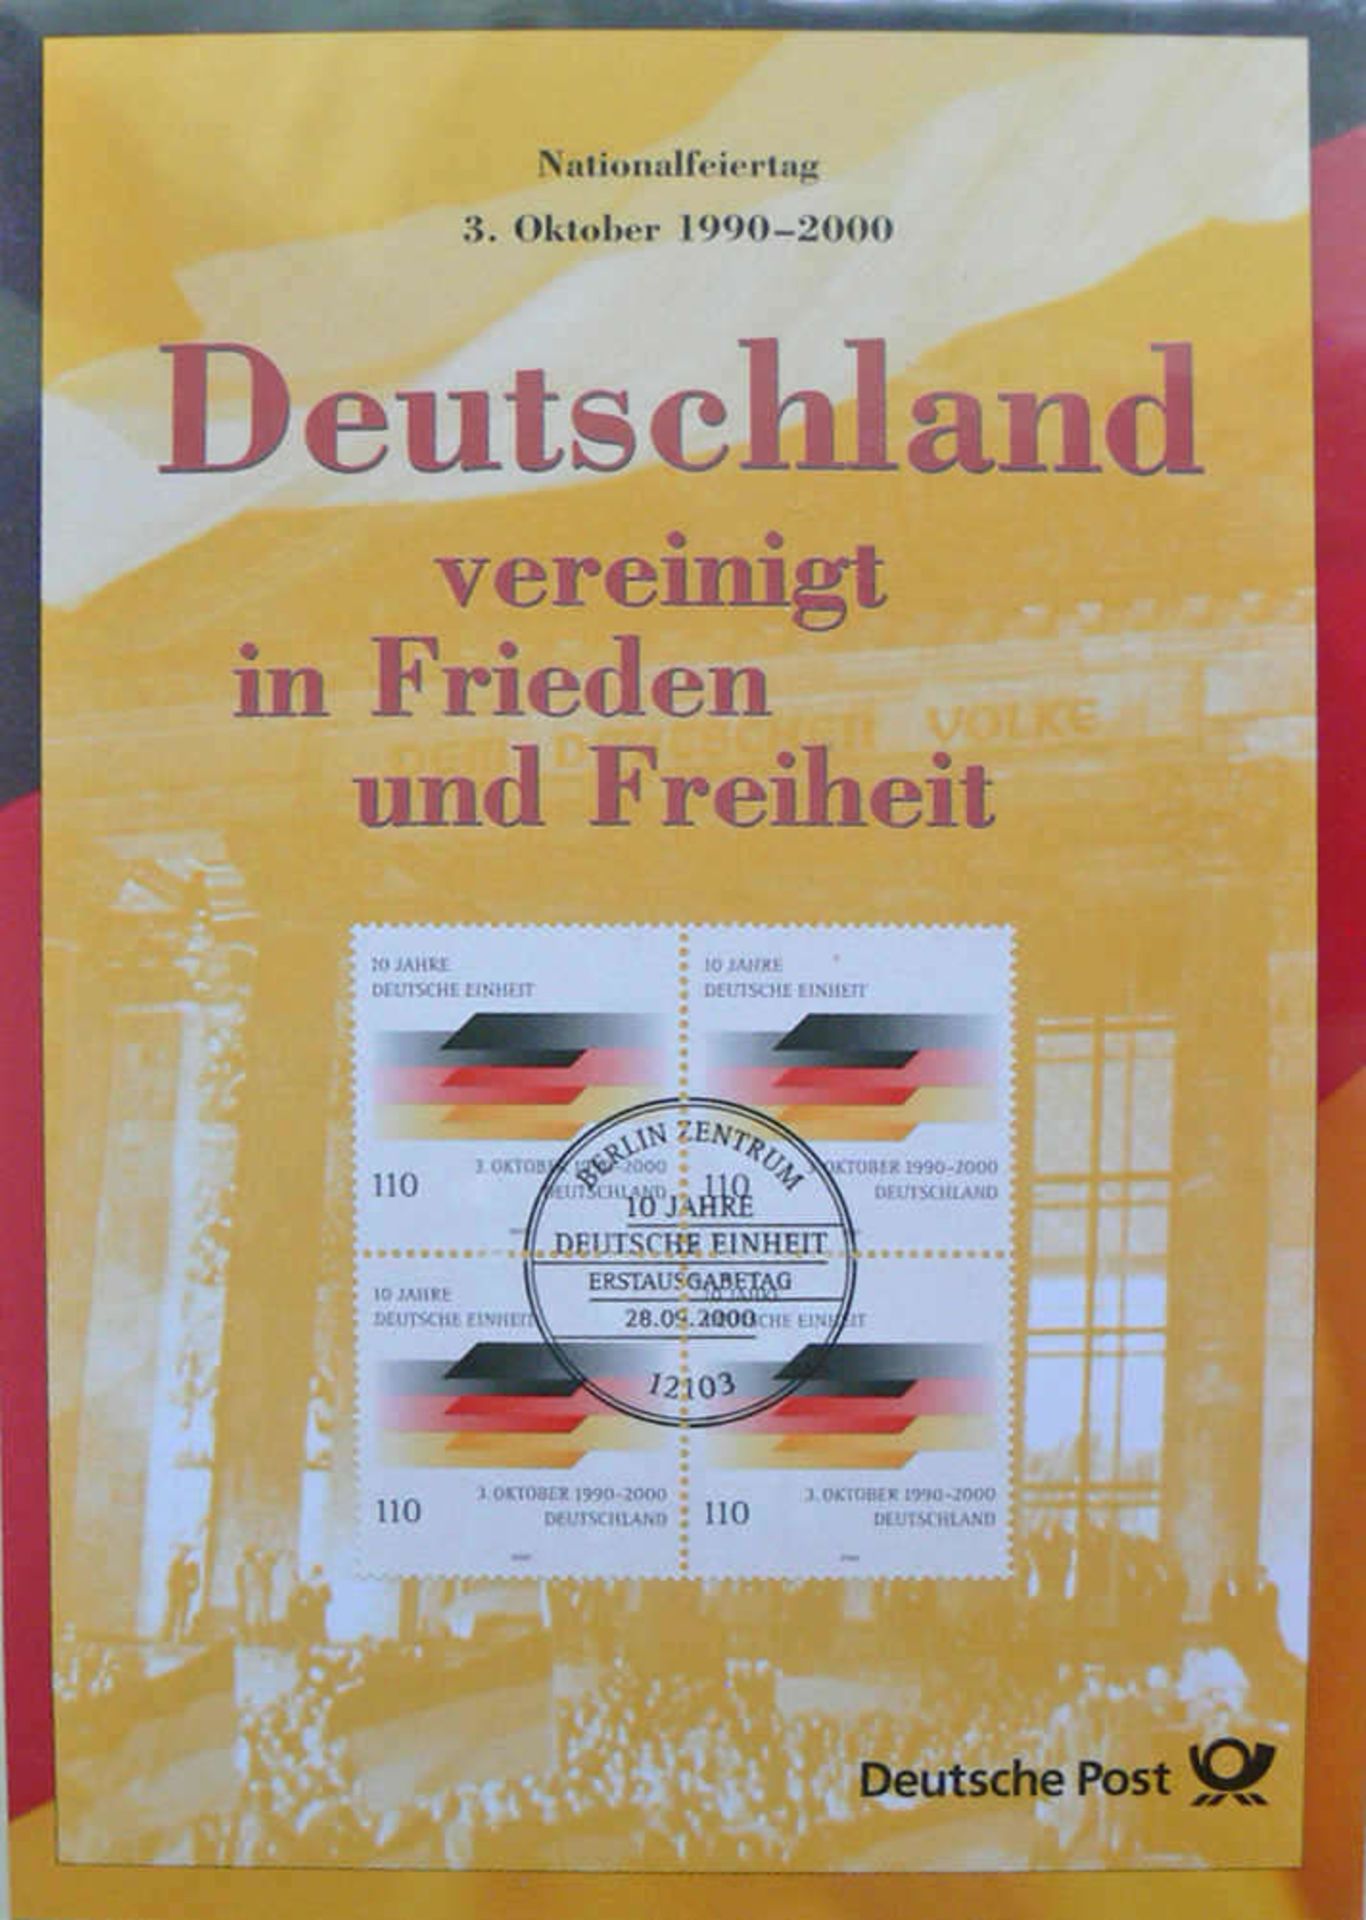 BRD, zwei Abo - Alben: 1. Atelier Edition 2002. 2. 10 Jahre deutsche Einheit. Germany, two - Image 8 of 8